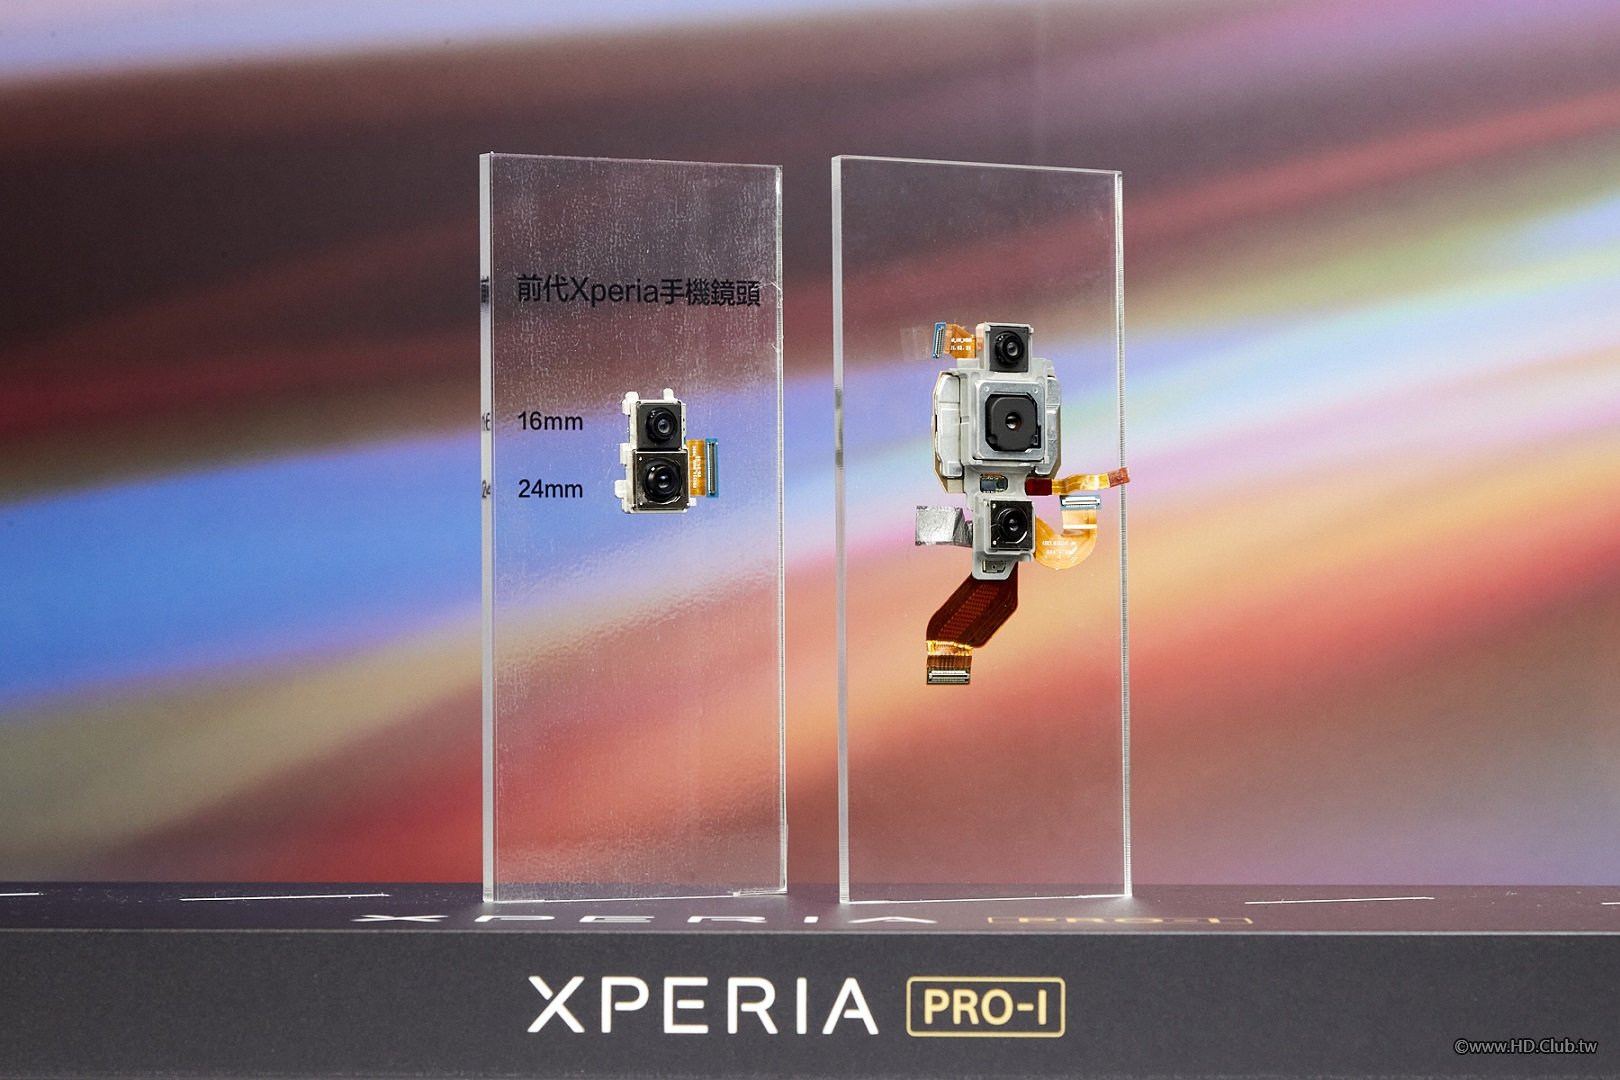 附件、Xperia PRO-I鏡頭與前代Xperia手機鏡頭比較.jpg